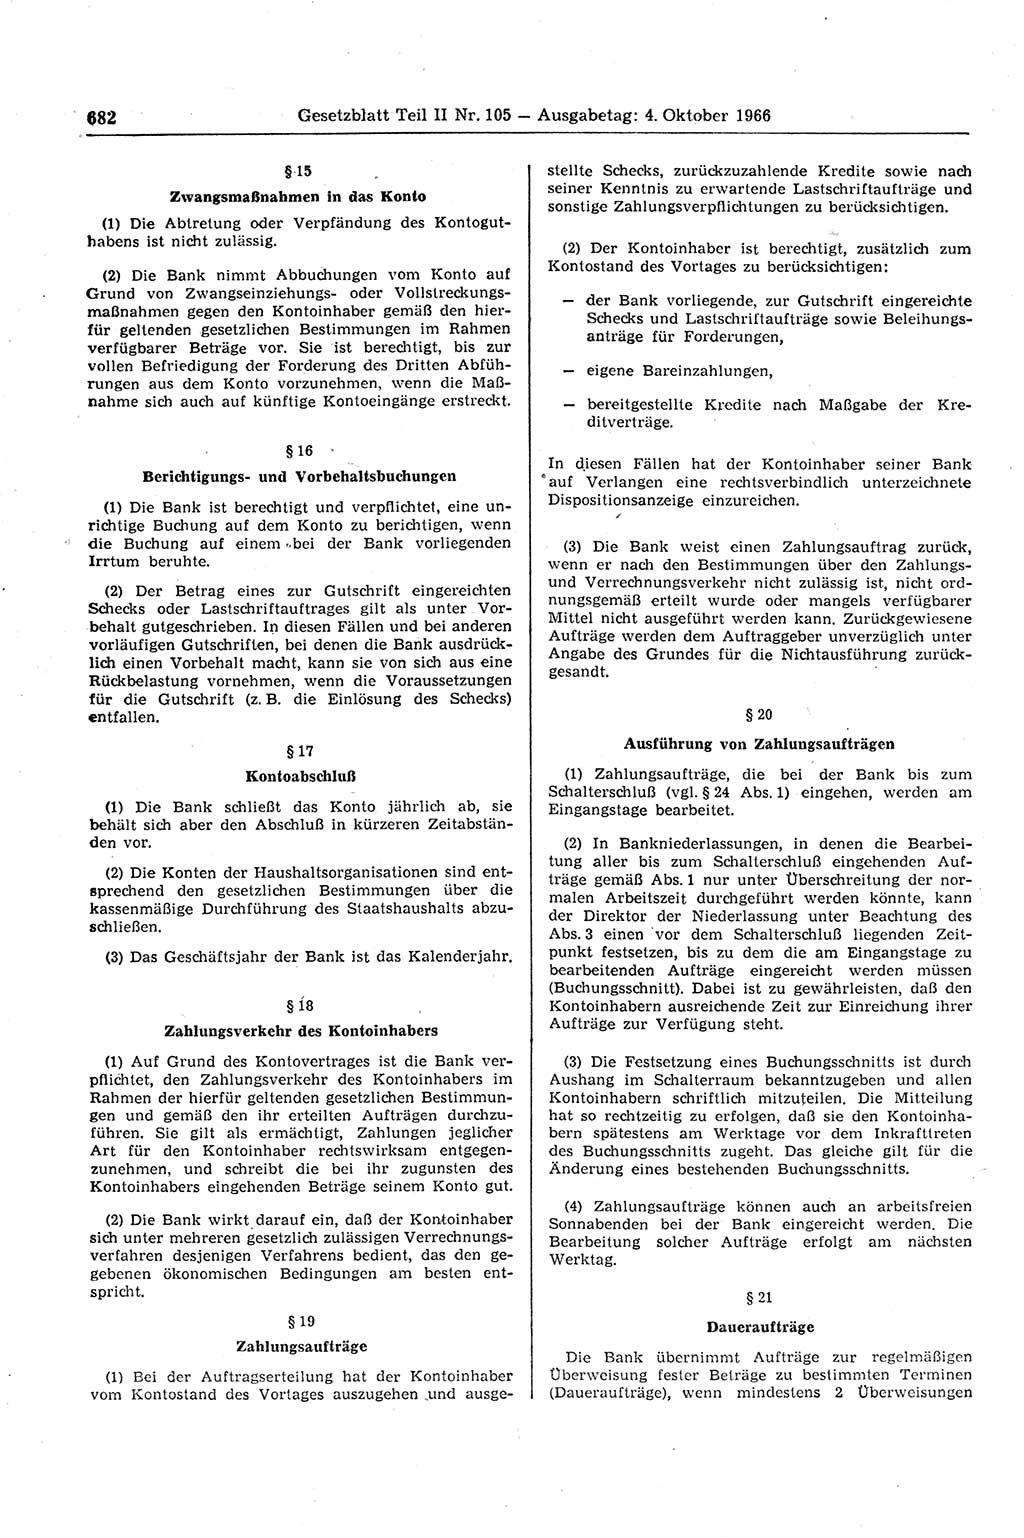 Gesetzblatt (GBl.) der Deutschen Demokratischen Republik (DDR) Teil ⅠⅠ 1966, Seite 682 (GBl. DDR ⅠⅠ 1966, S. 682)